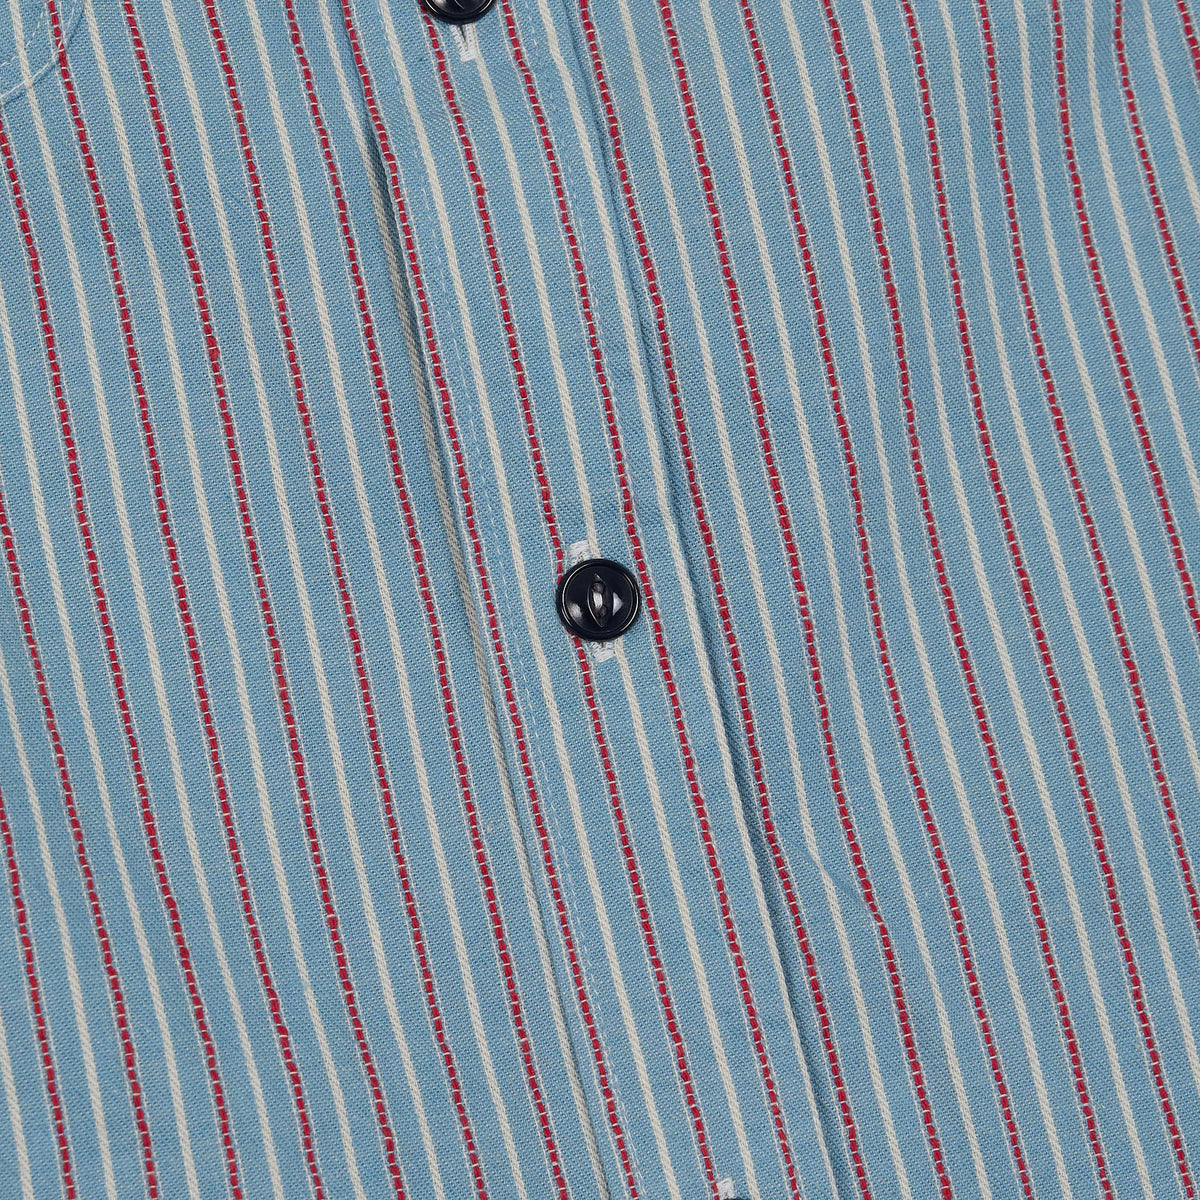 Sugar Cane Woven Stripes Work Shirt